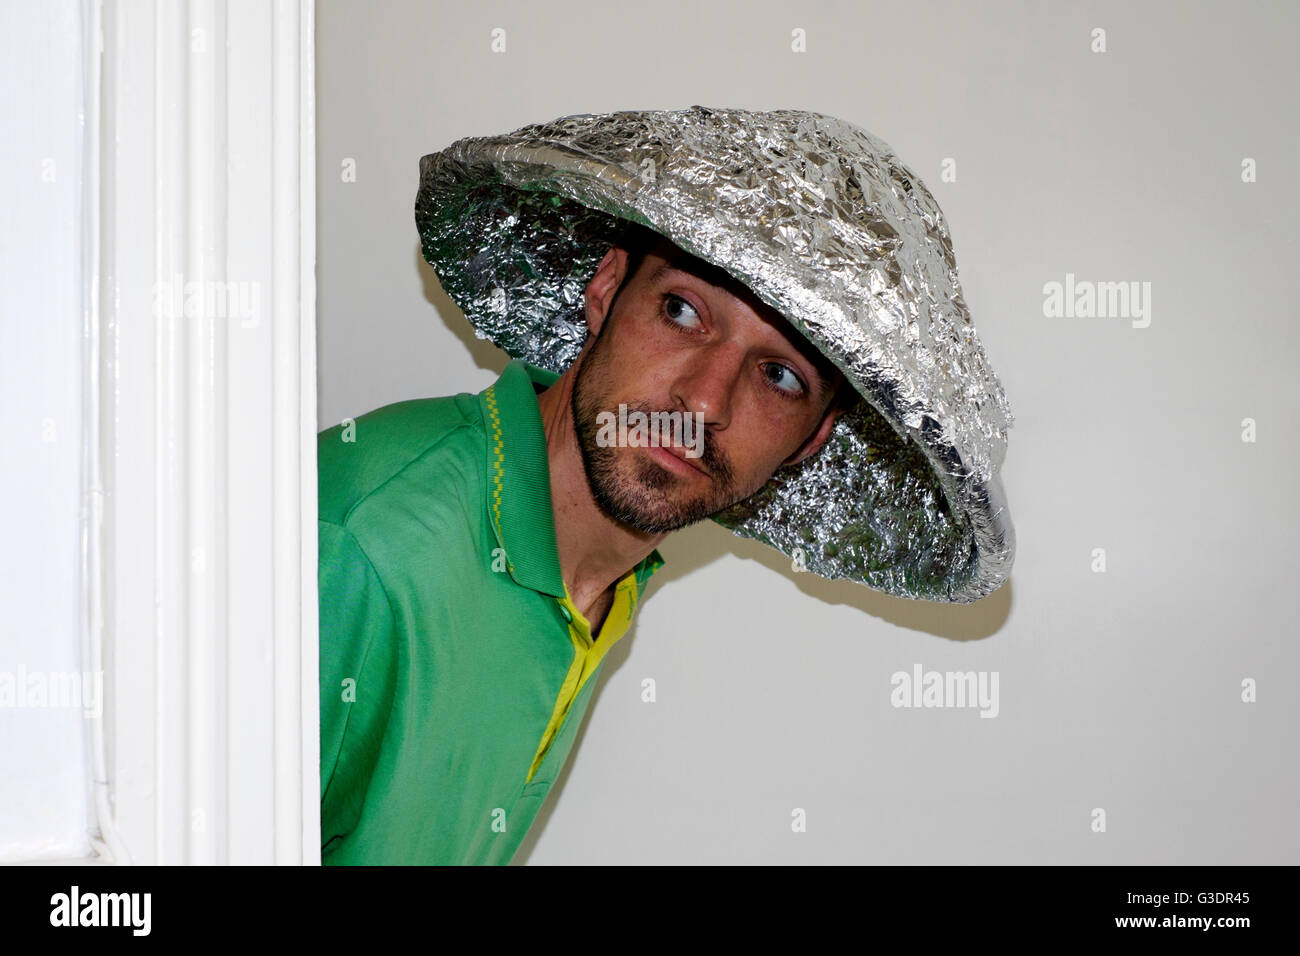 kolbe Det er billigt rim Foil hat hi-res stock photography and images - Alamy